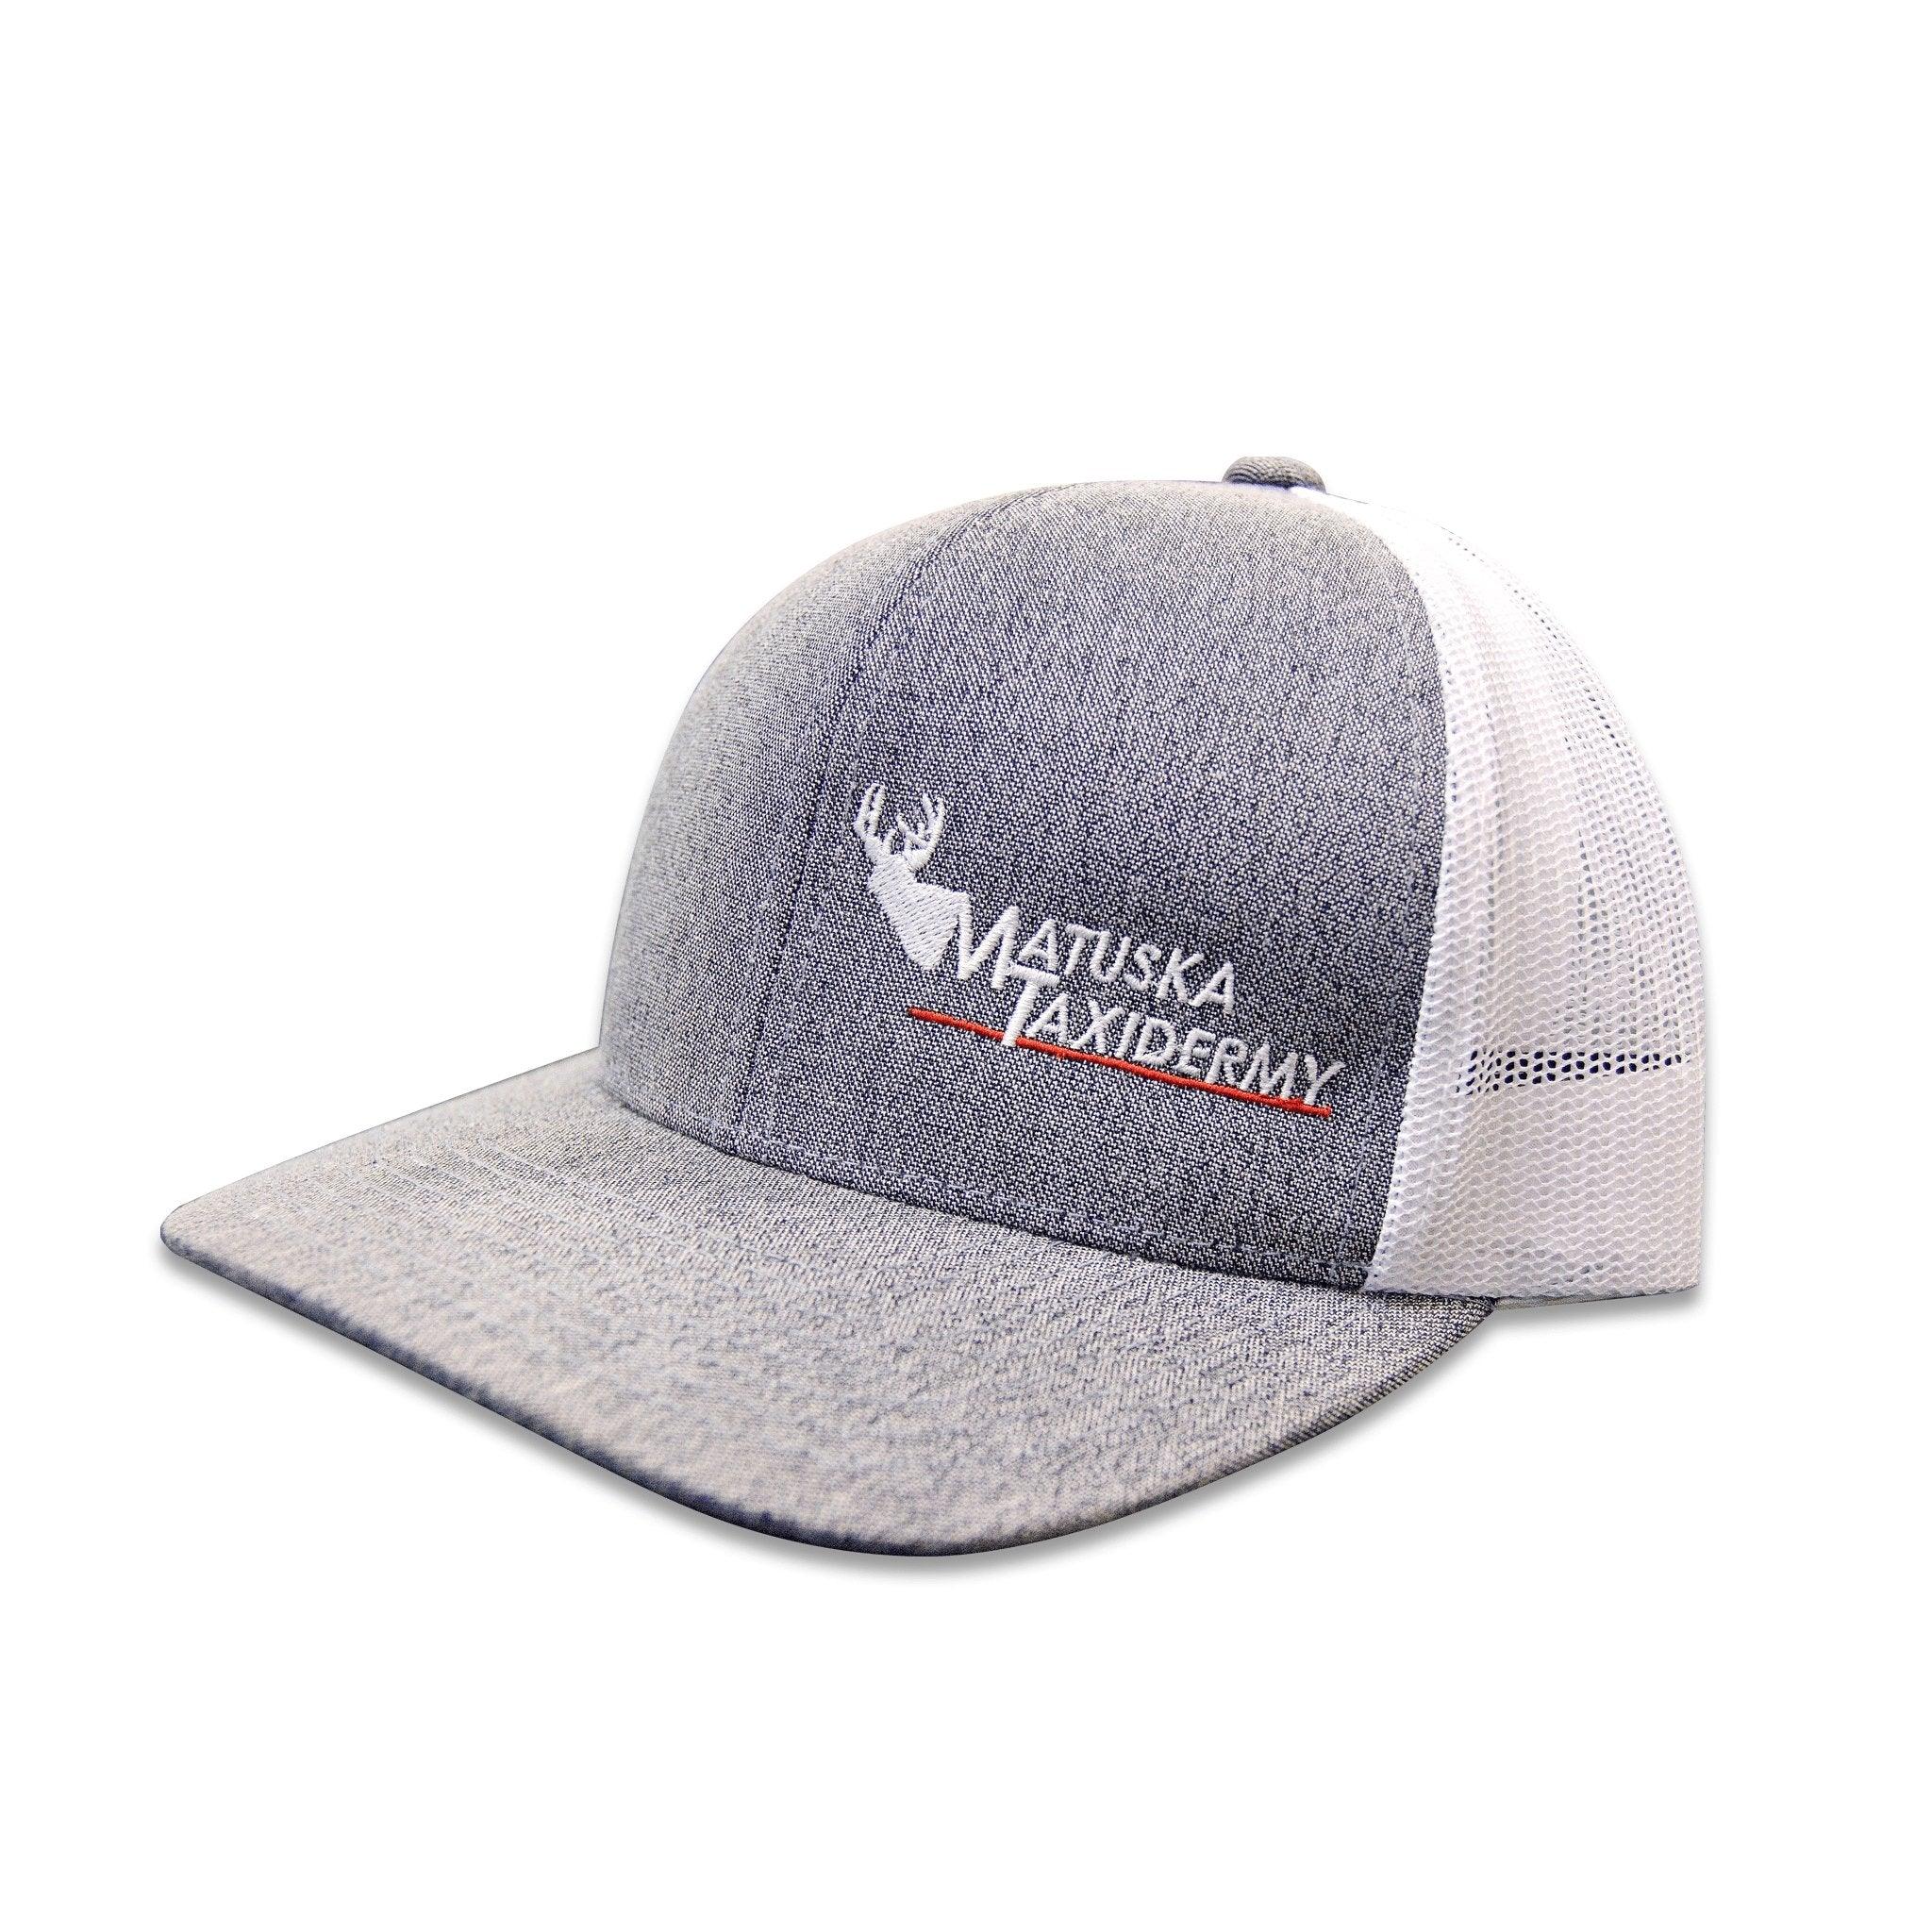 Flexi Fit Grey Snapback Cap - Matuska Taxidermy Supply Company